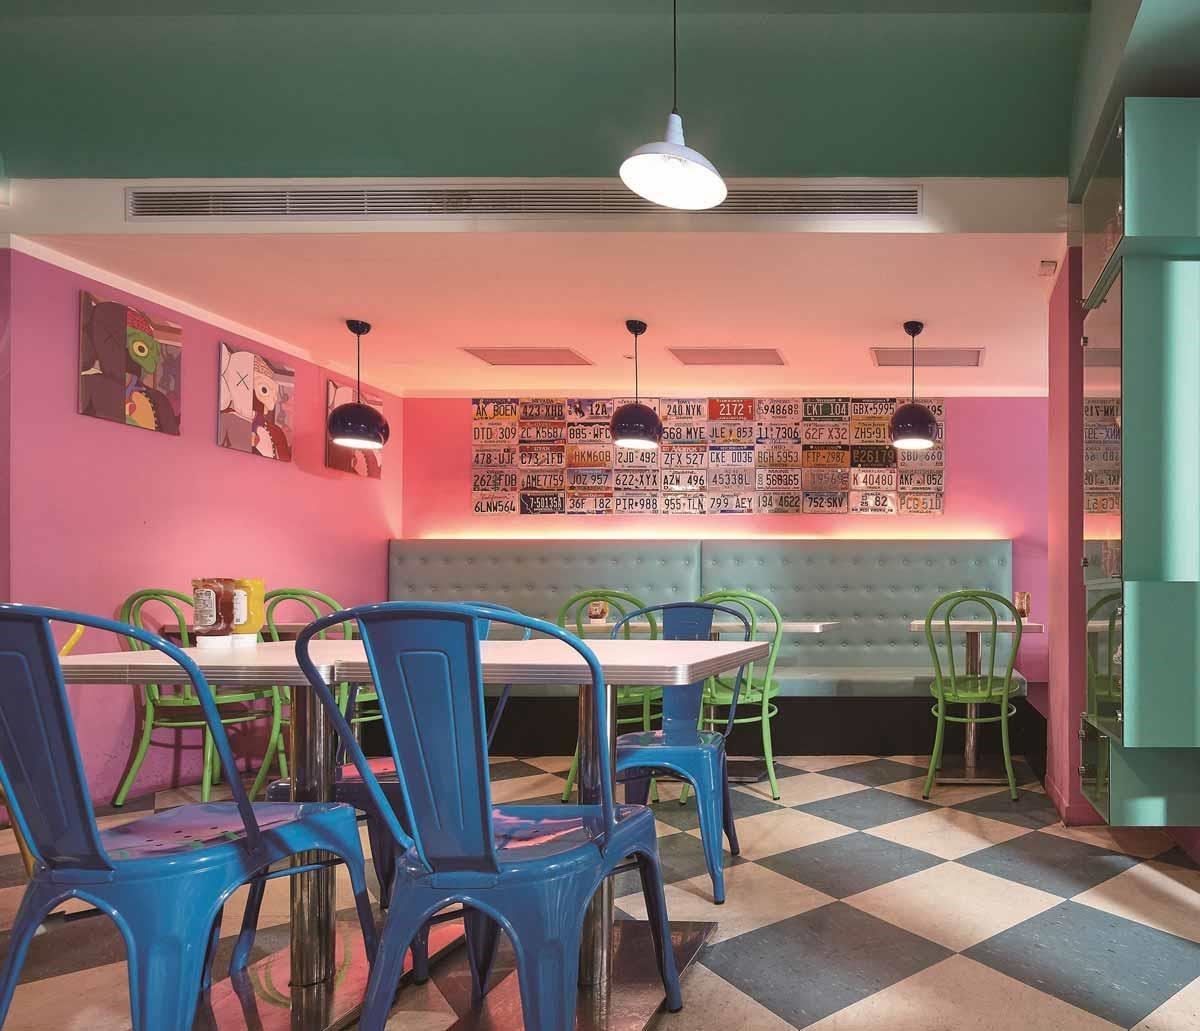 採用藍綠色與白色，加上粉紅色牆面、藍綠色復古皮革沙發，再加上各式鮮豔顏色烤漆的工業風餐椅、吧檯椅，營造摩登、年輕的美式餐廳空間。